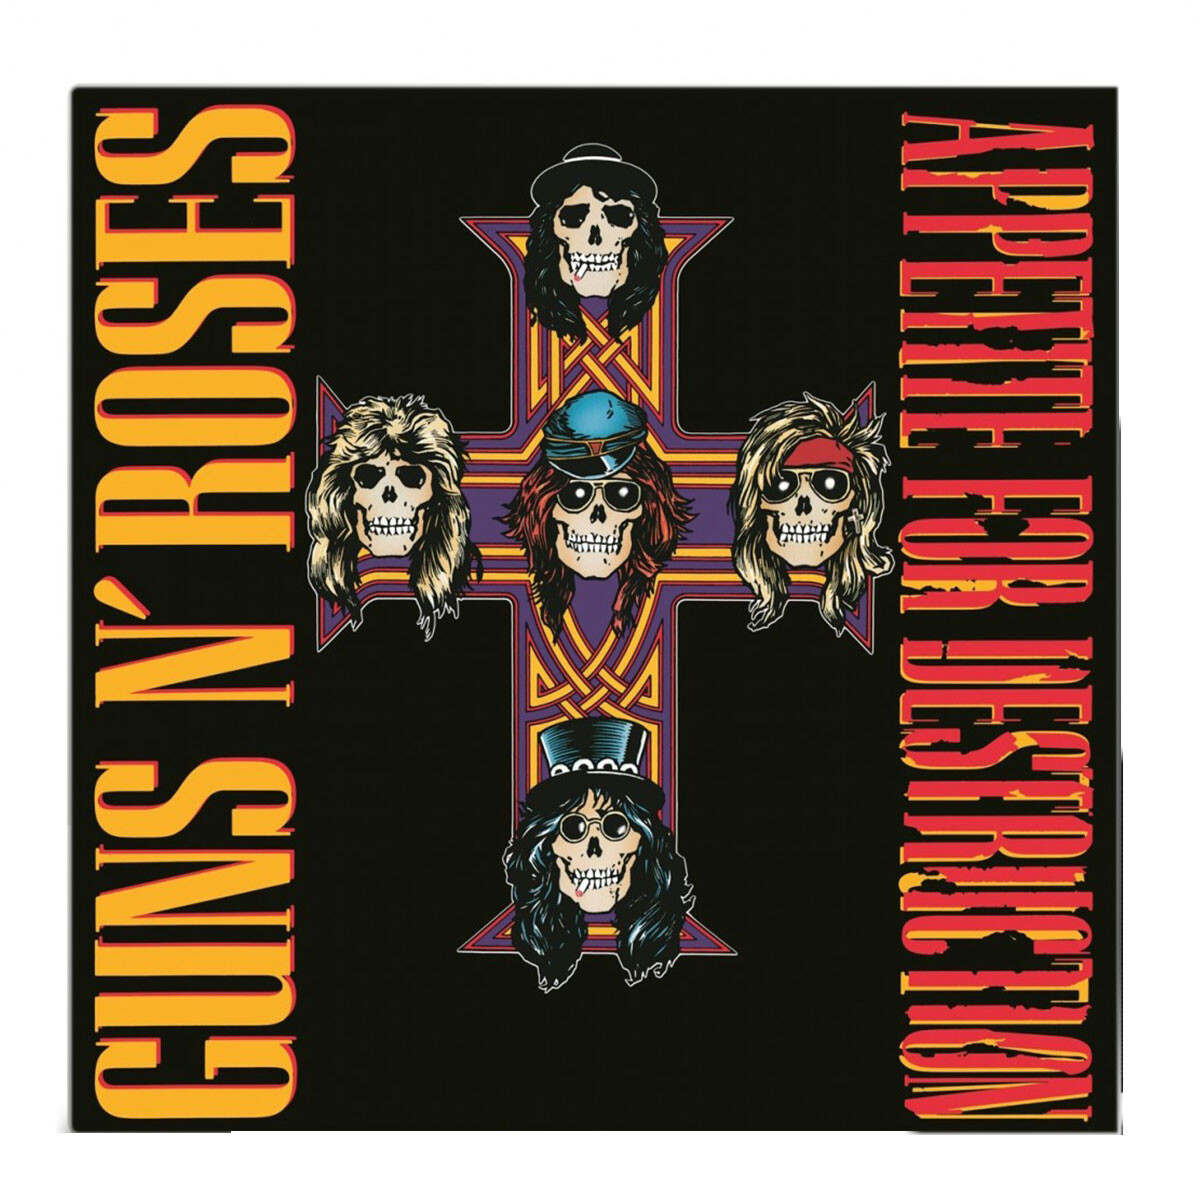 Team Guns N' Roses: Appetite For Destruction - Letra e Tradução